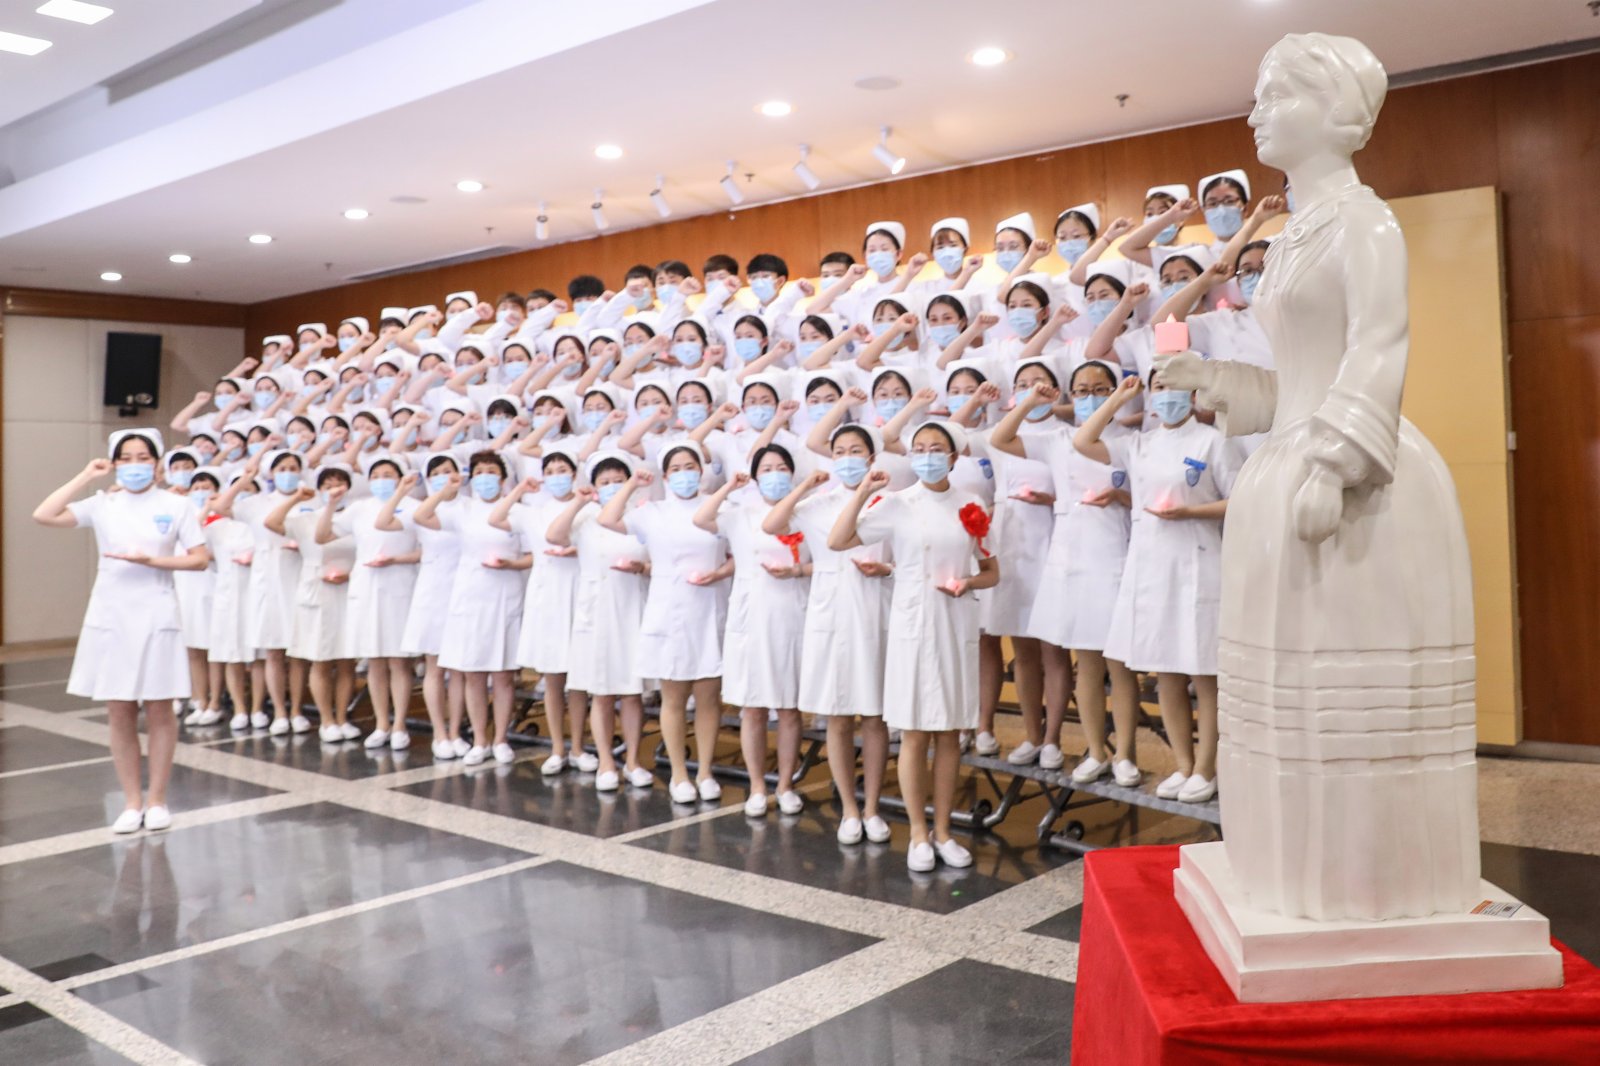 北京大學人民醫院的新入職護士一同重溫南丁格爾誓言。